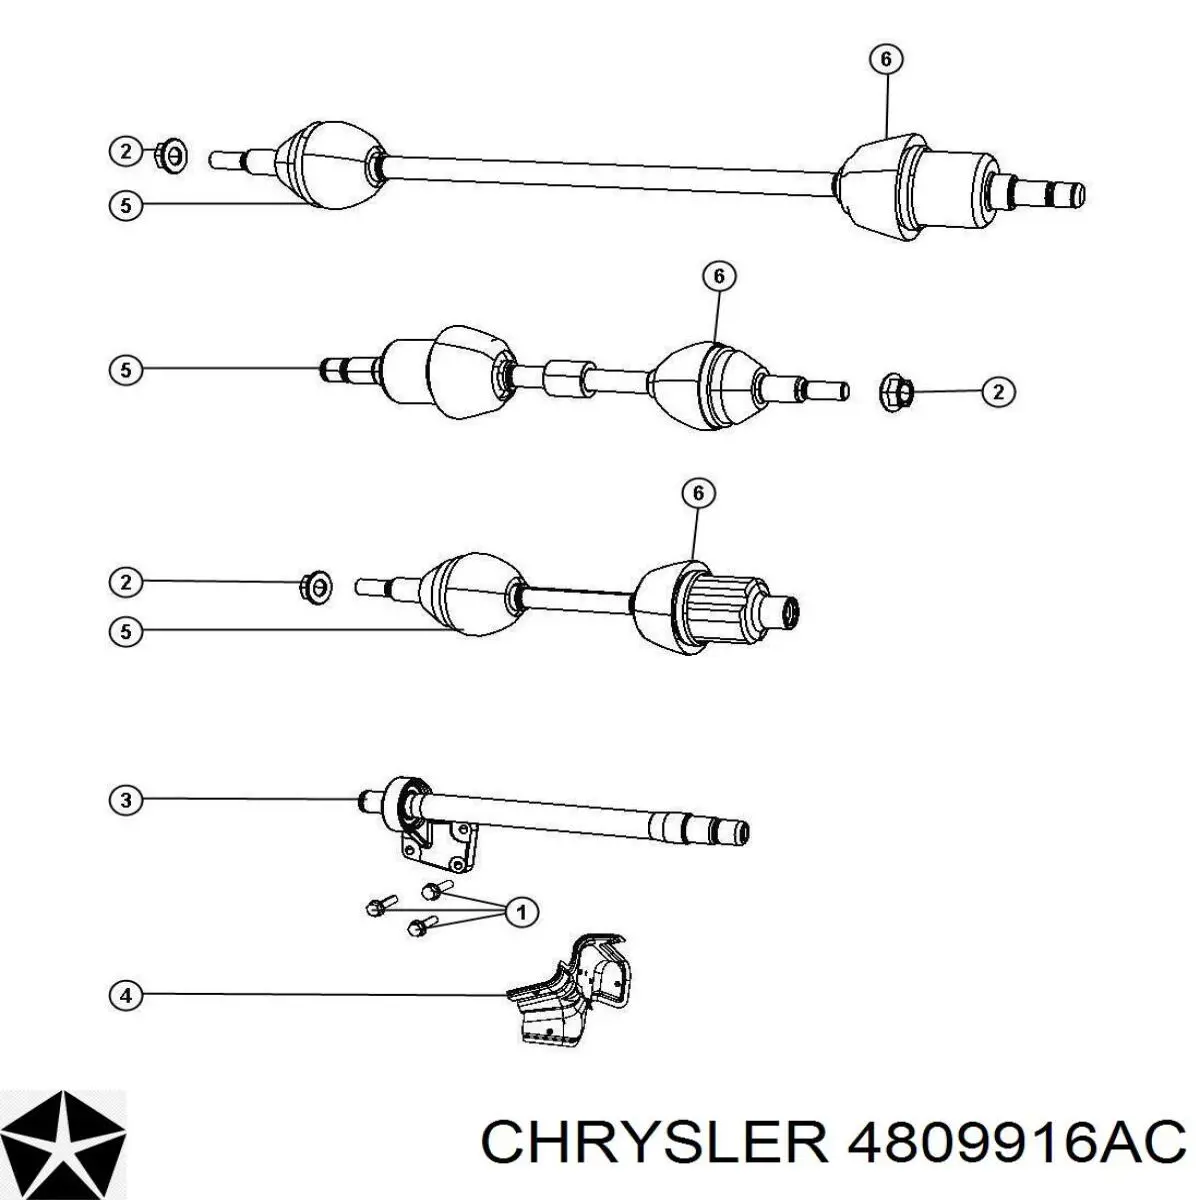 4809916AC Chrysler вал привода полуоси промежуточный